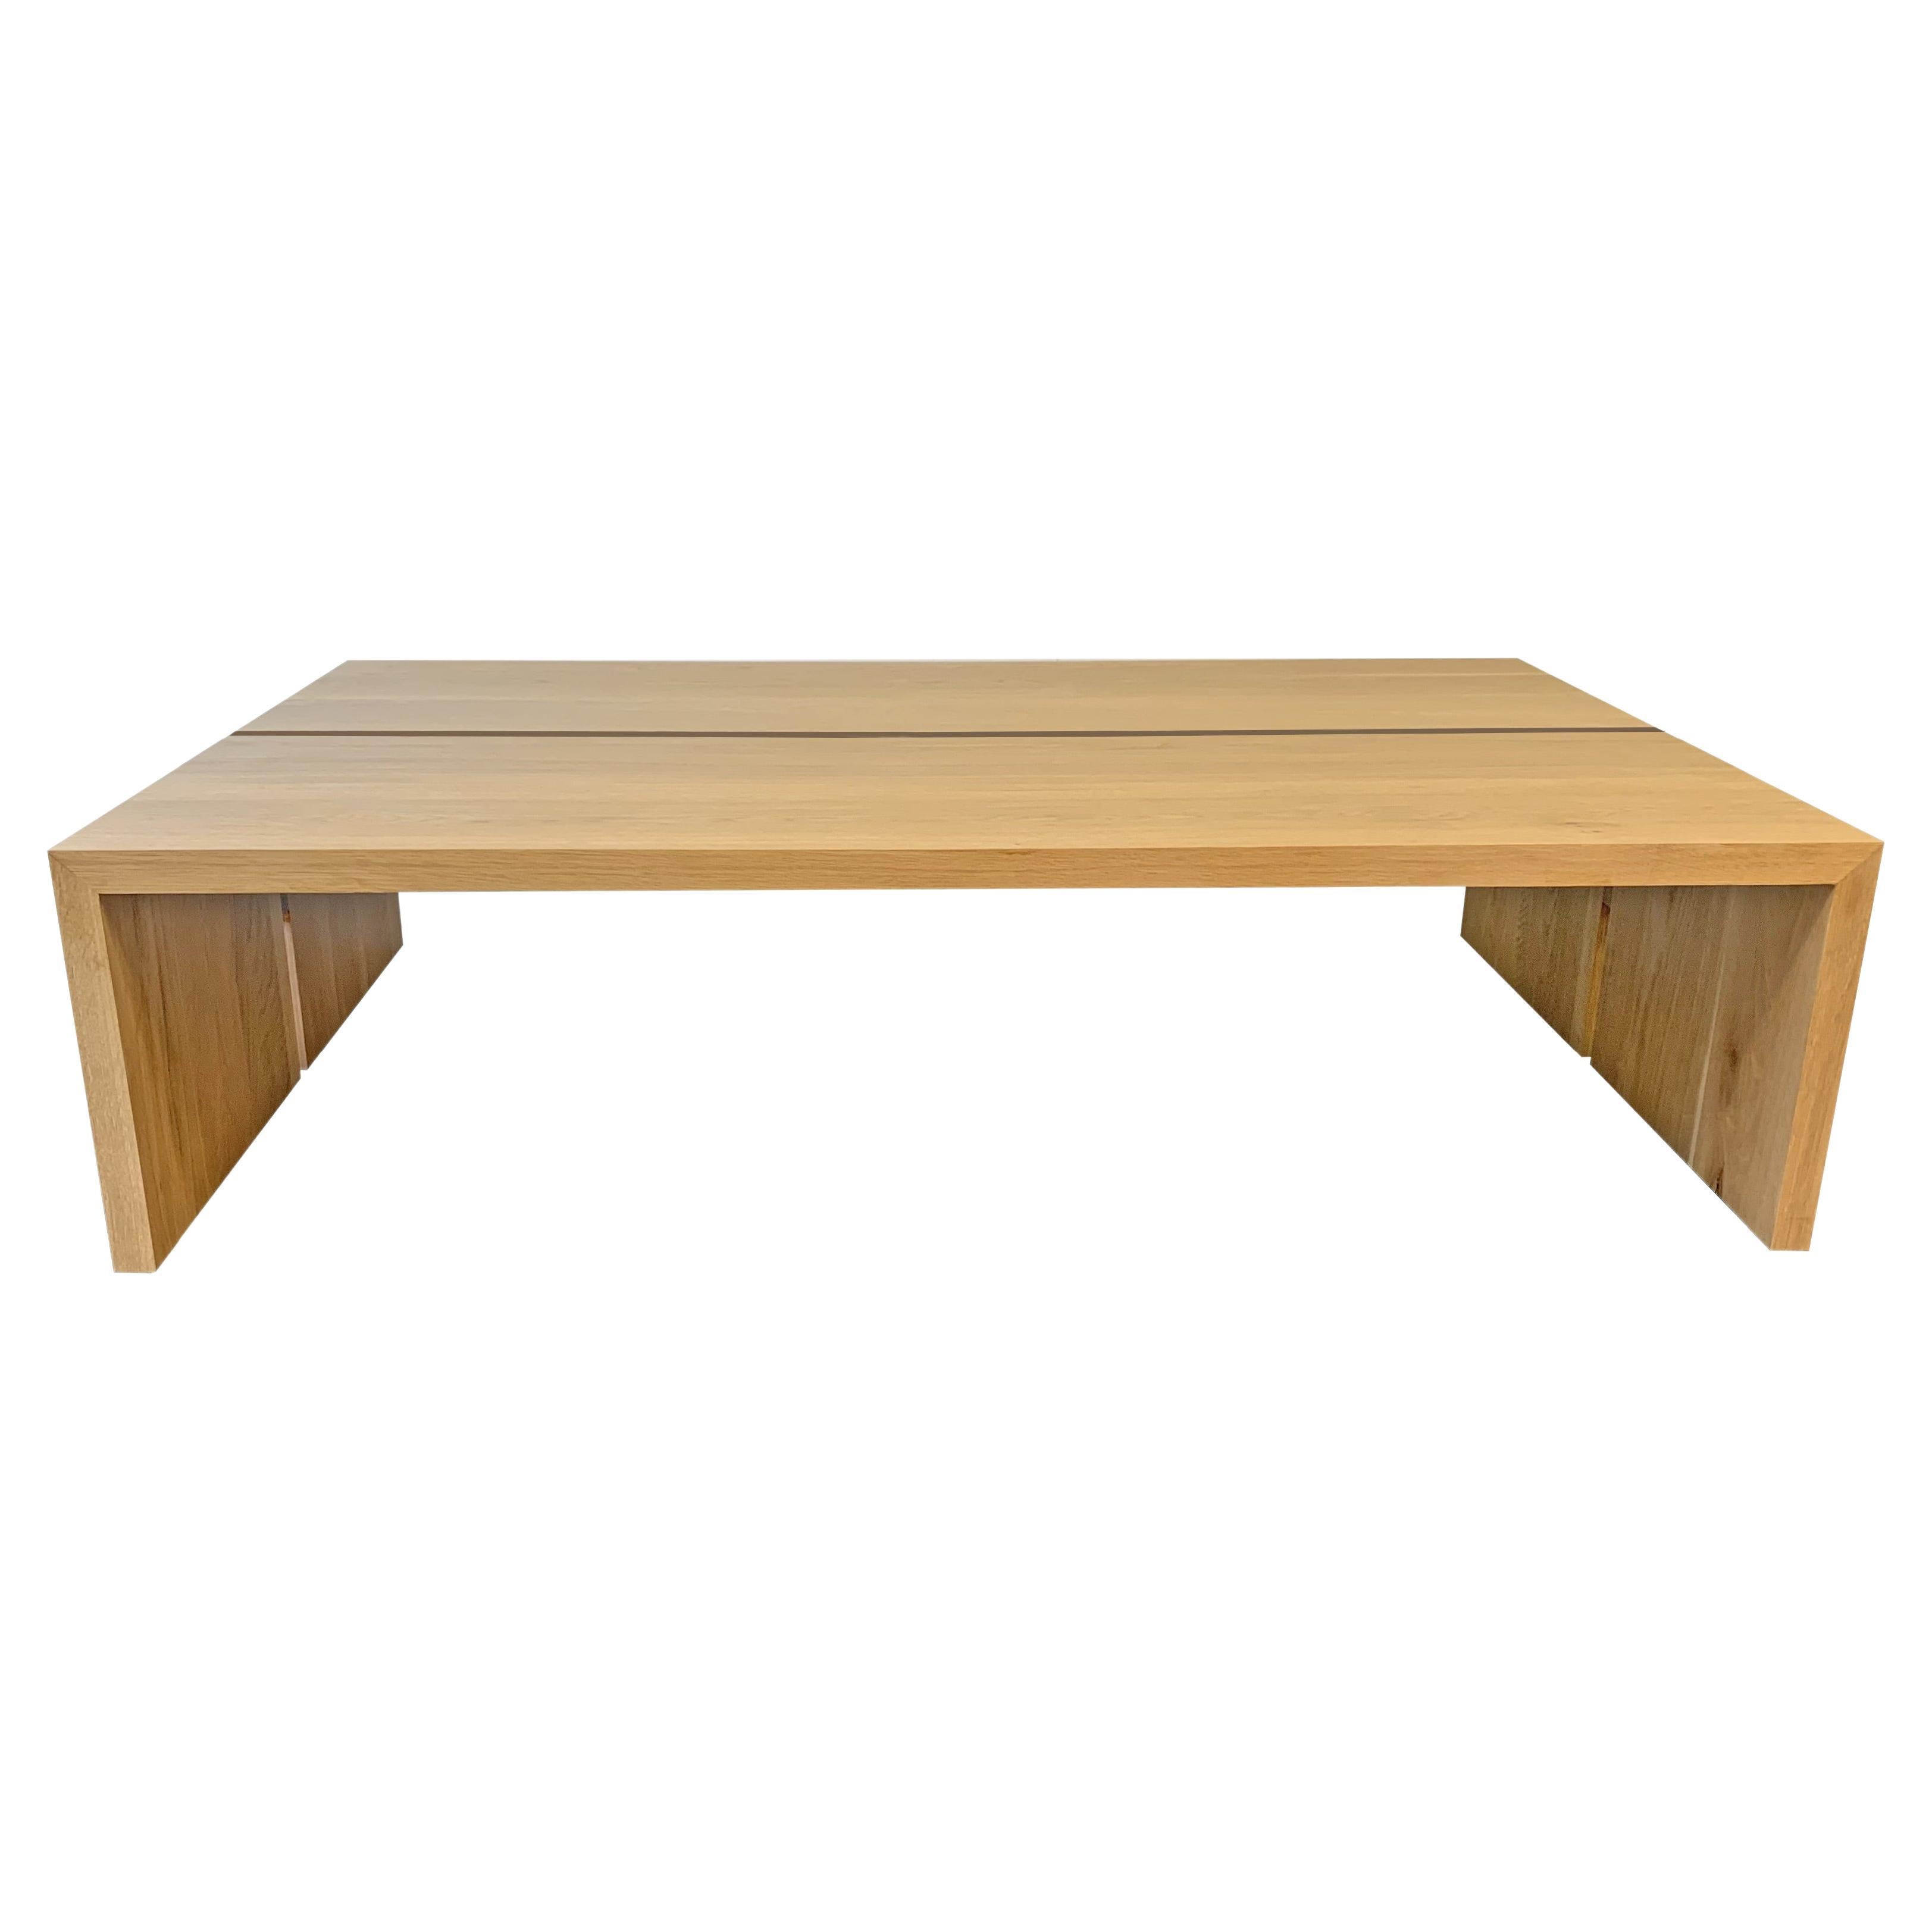 Cette table basse personnalisée est fabriquée à la main aux États-Unis avec du bois dur. Il présente un design moderne de cascade rectangulaire avec un corps en chêne blanc massif et un détail minimaliste d'incrustation en noyer. Les extrémités en